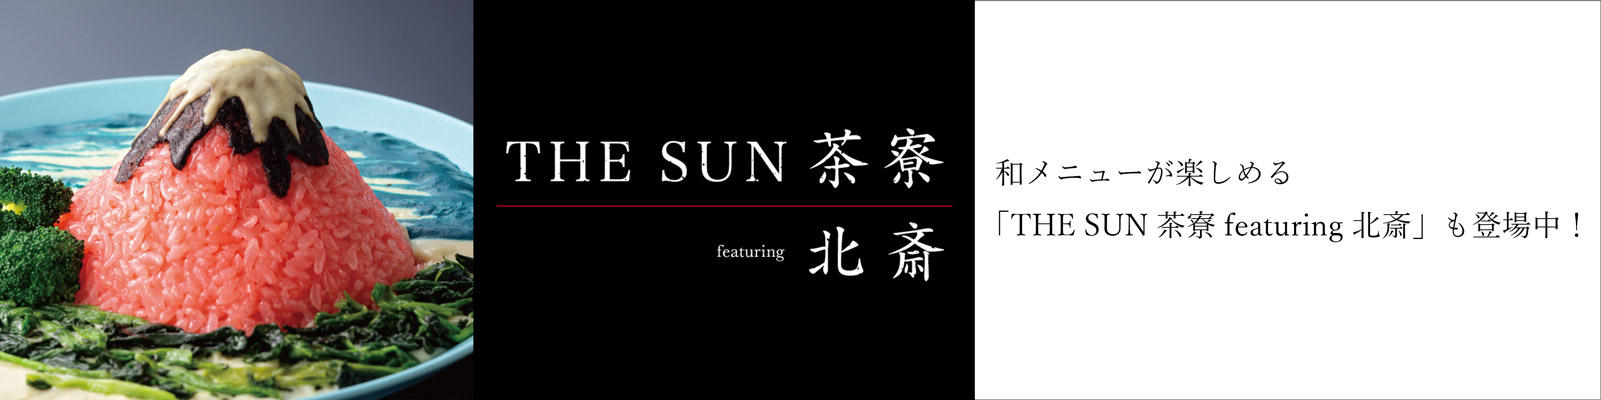 THE SUN 茶寮 featuring 北斎